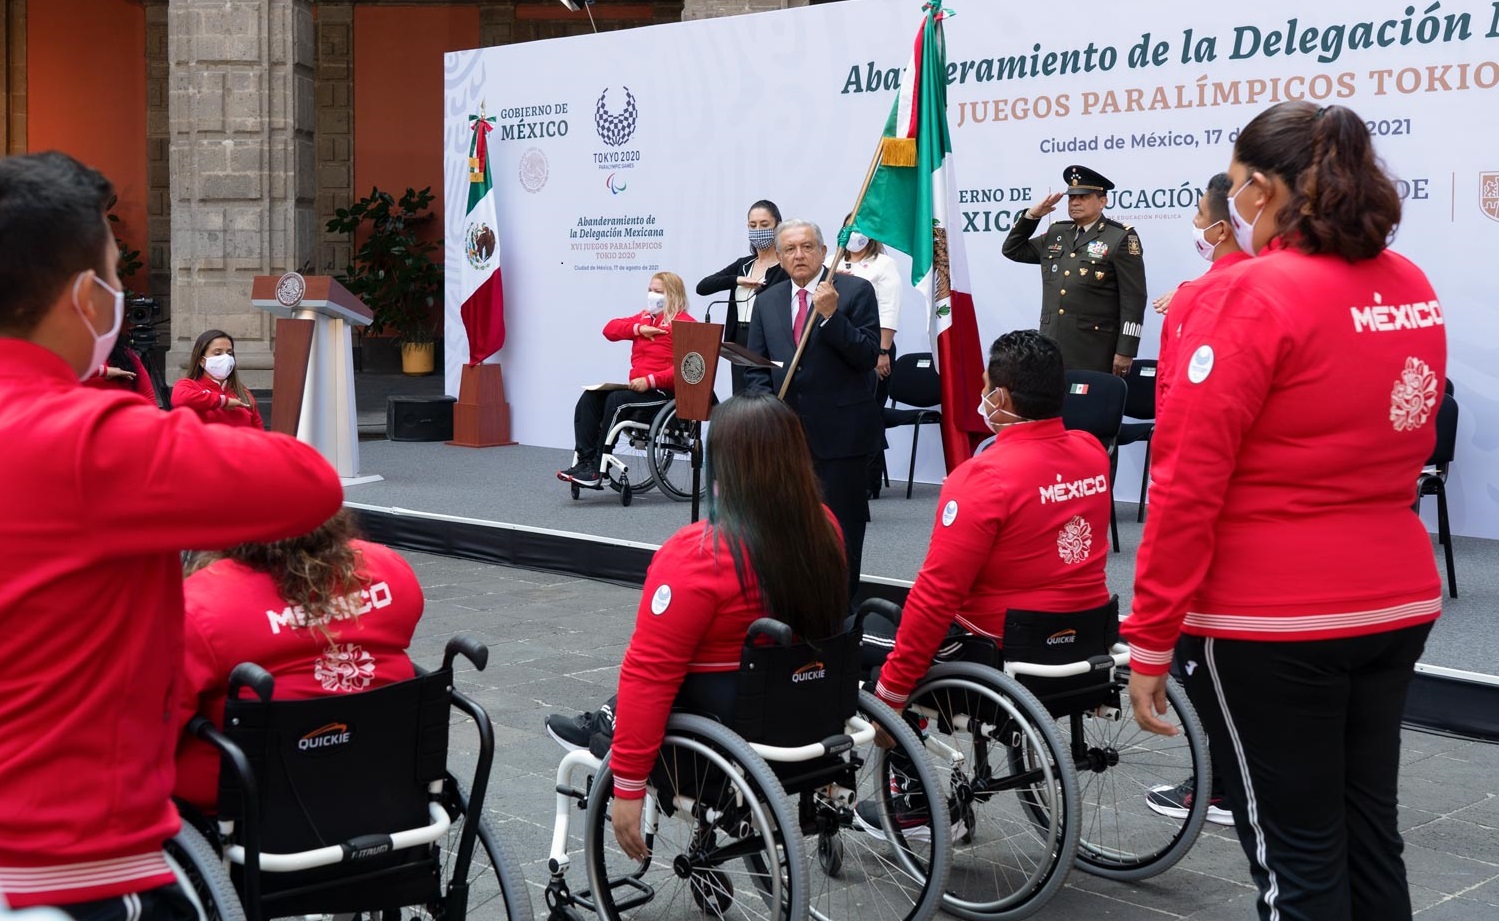 Lopez Obrador abandera a delegacion mexicana participante en los XVI Juegos Paralimpicos de Tokio 2020